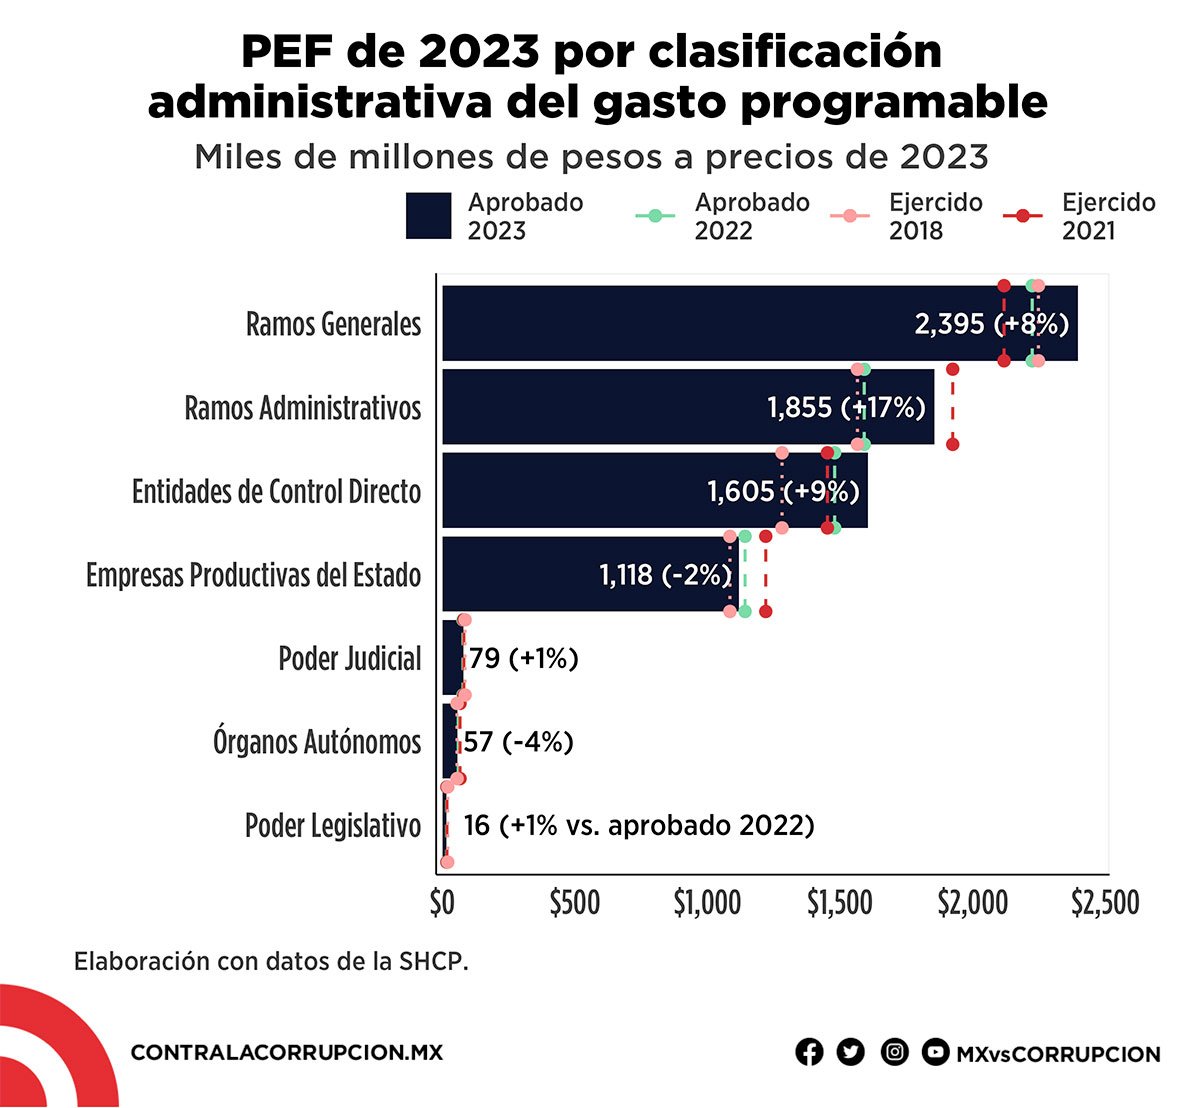 PEF de 2023 por clasificación administrativa del gasto progranmable